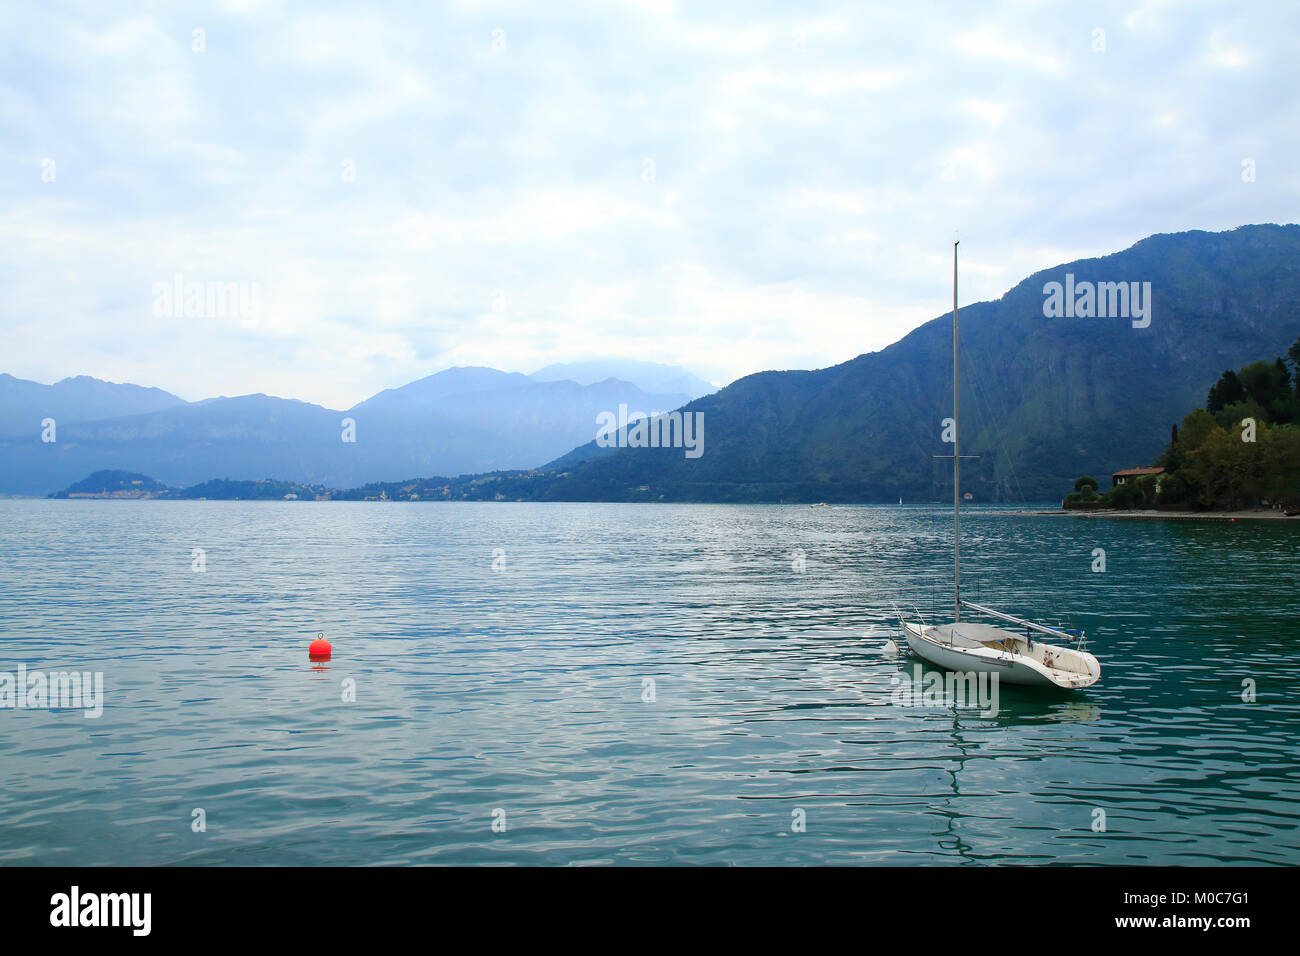 Einsames Segelboot mit einer roten Boje am Comer See in Italien, bei Lenno Stock Photo